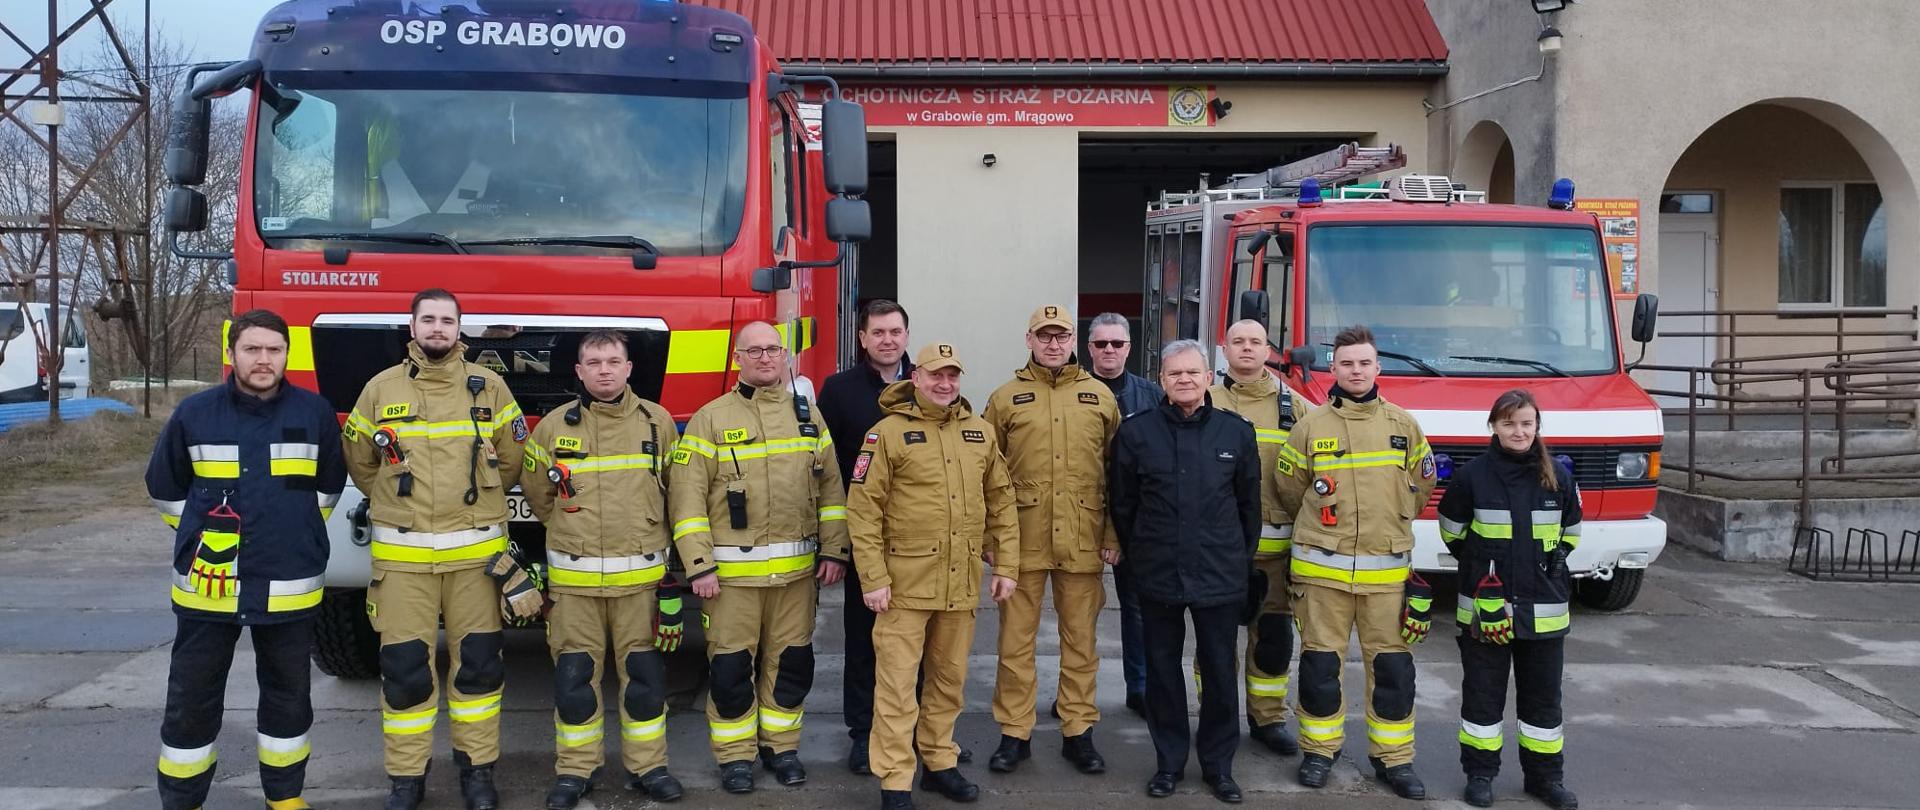 Zastępca Warmińsko Mazurskiego Komendanta Wojewódzkiego PSP st. bryg. Tomasz Ostrowski wizytował na terenie powiatu mrągowskiego.